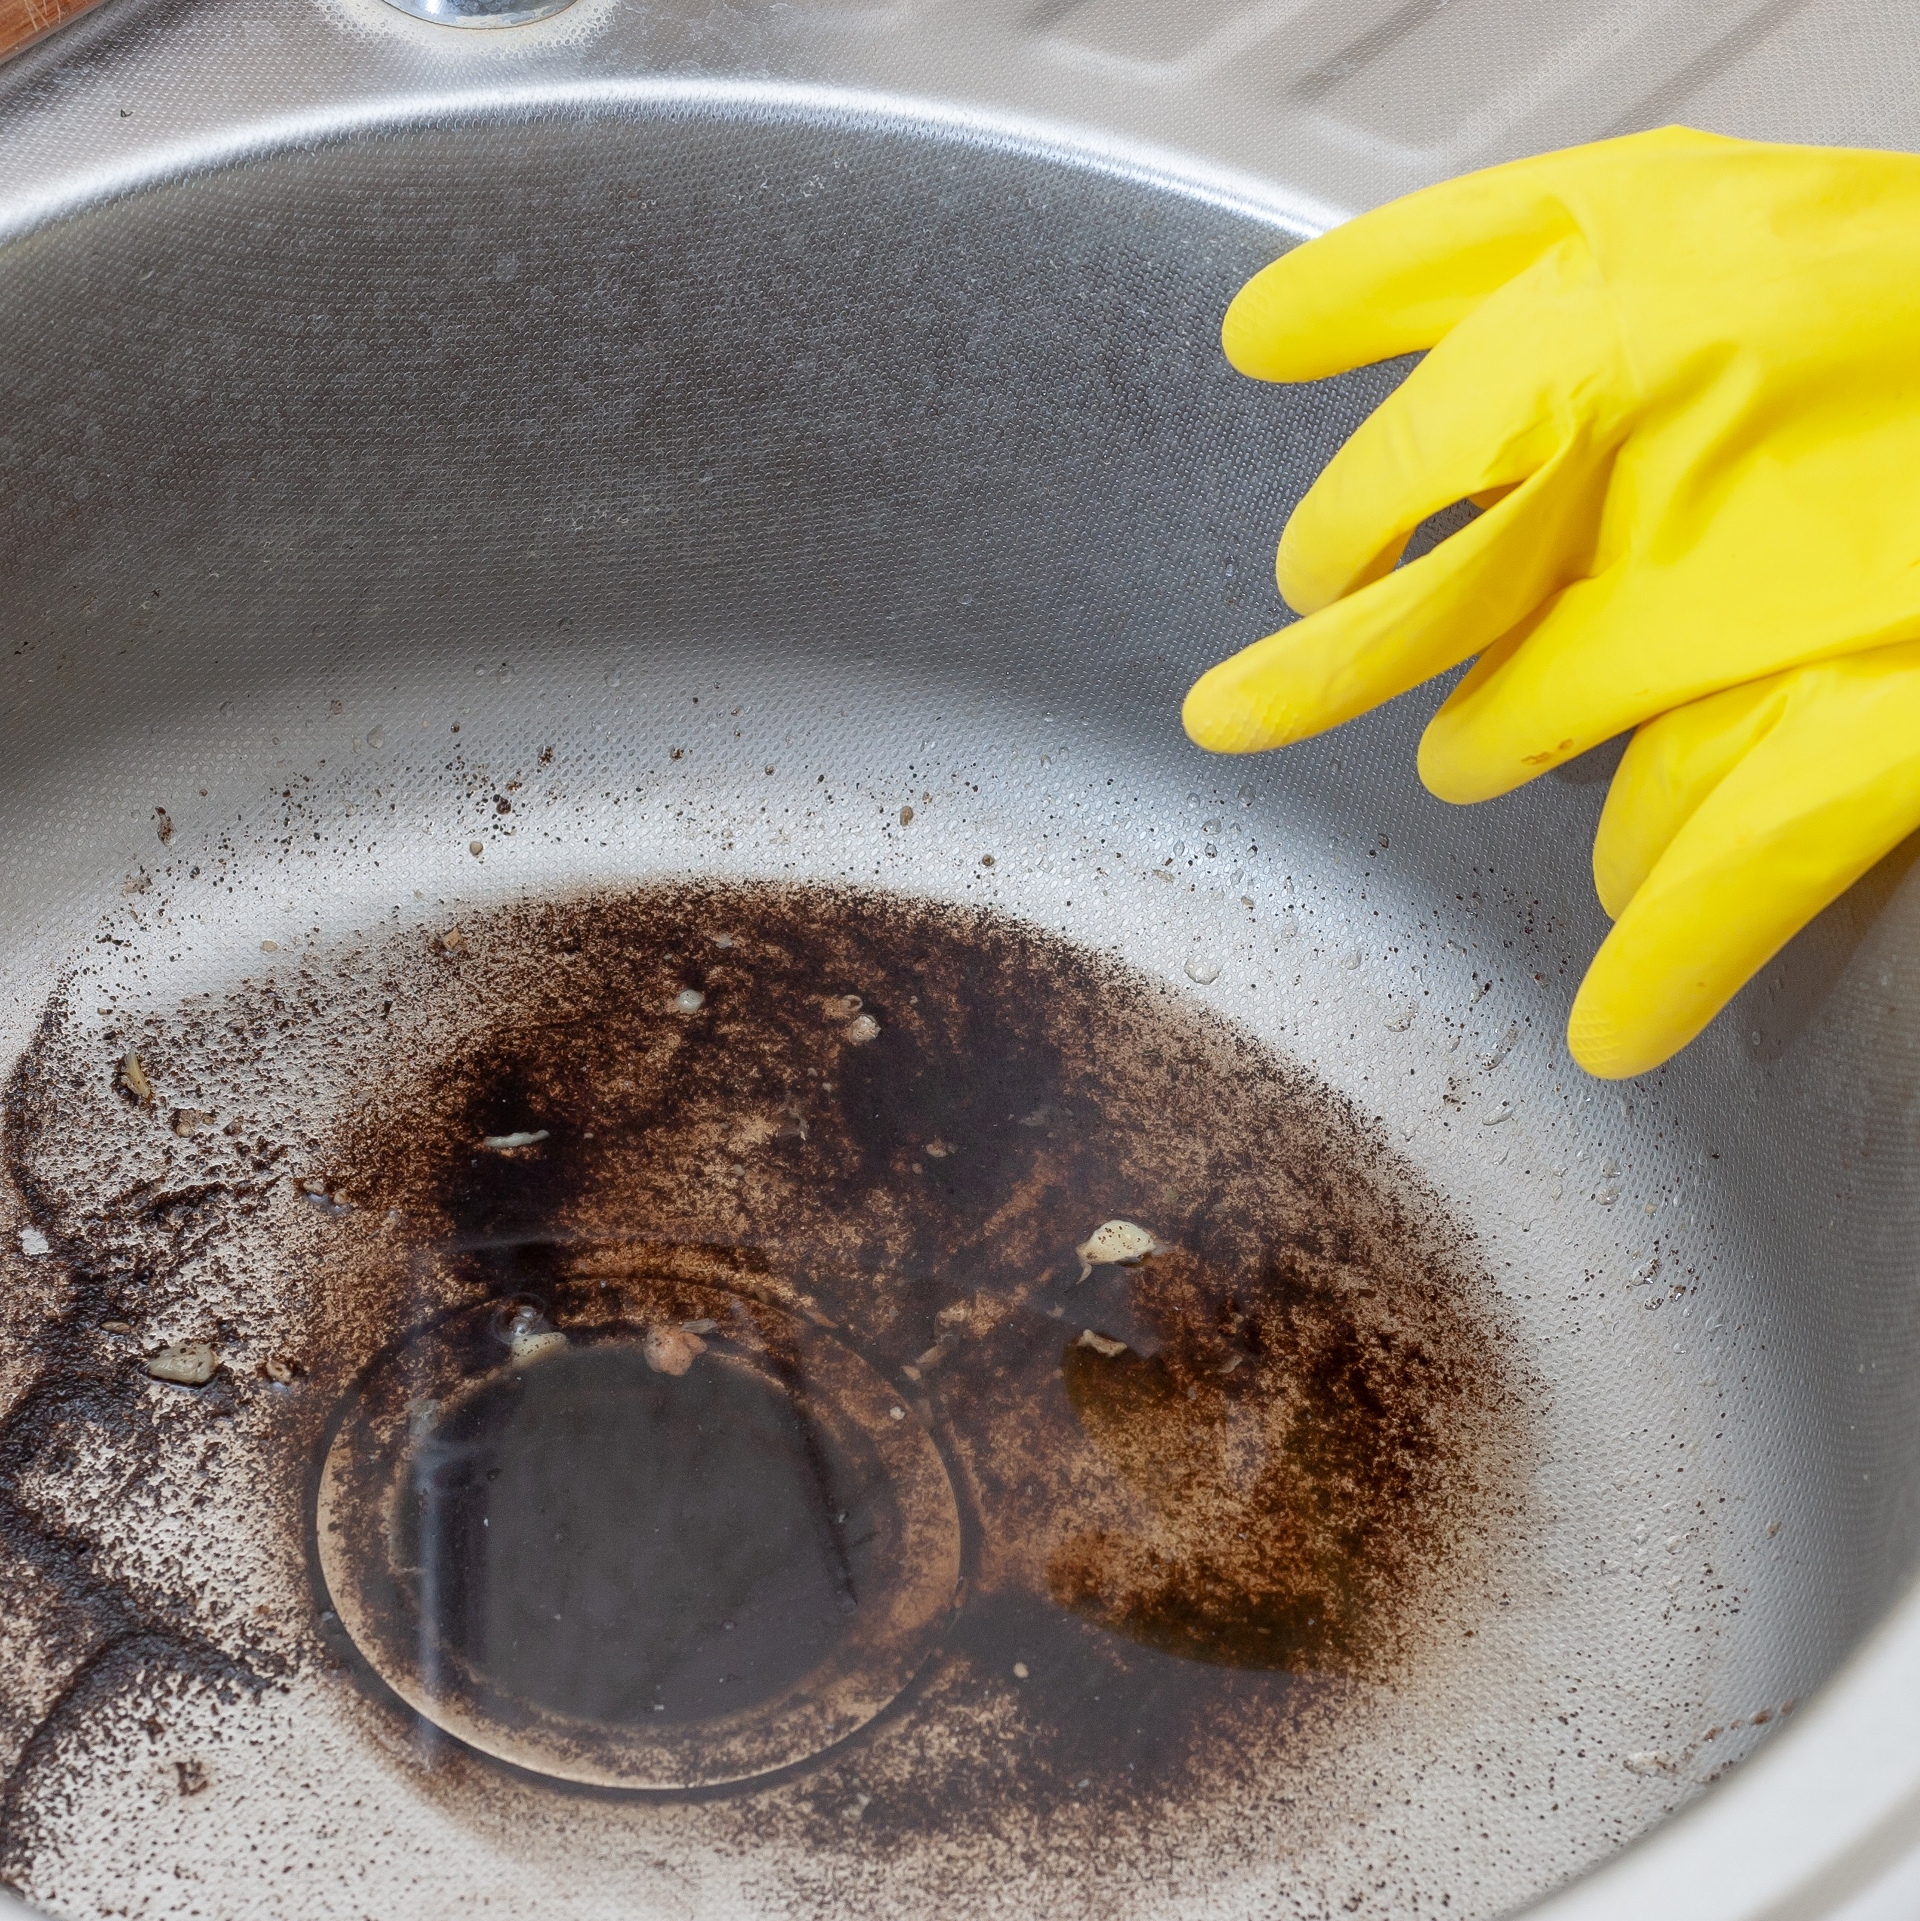 På billedet ser man en rund metalhåndvask. I bunden af vasken ligger der noget flydende fedt og snavs. På kanten af vasken ligger der nogle gule gummihandsker.